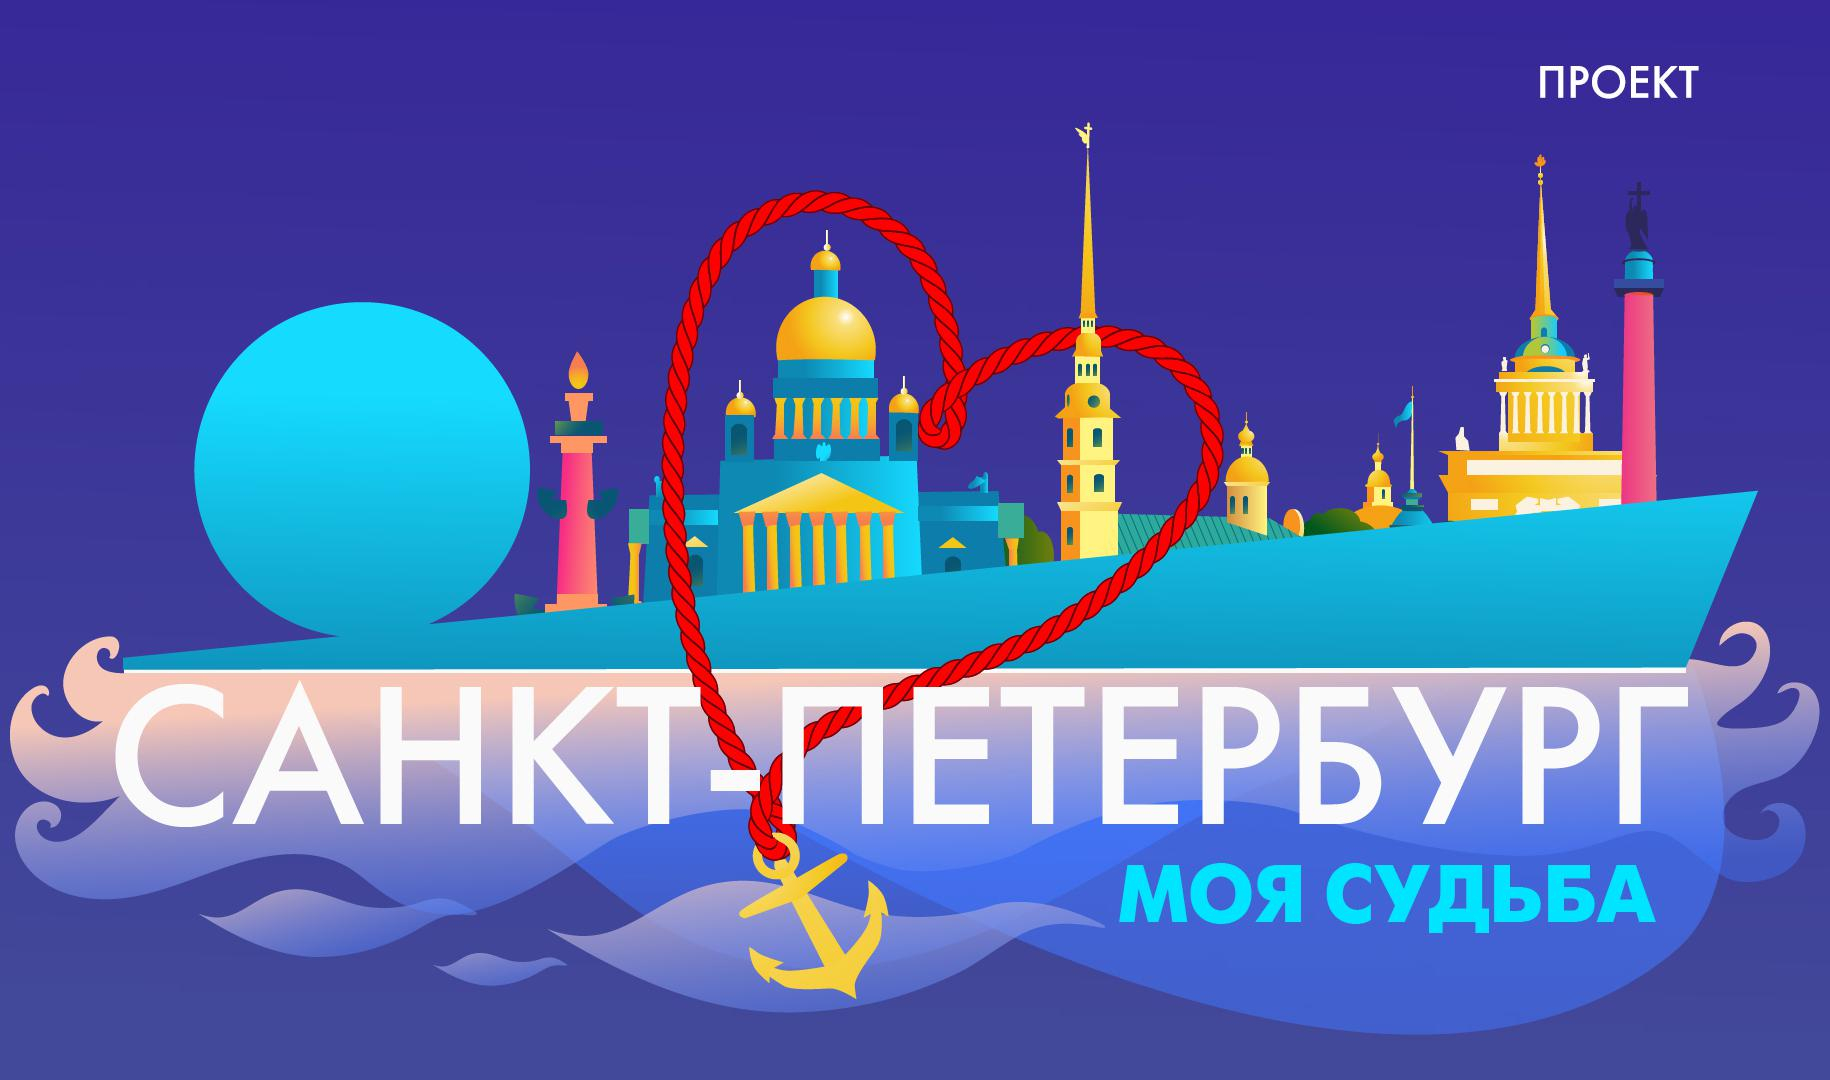 «Санкт-Петербург — моя судьба». Акция телеканала «Санкт-Петербург», посвященная Дню города